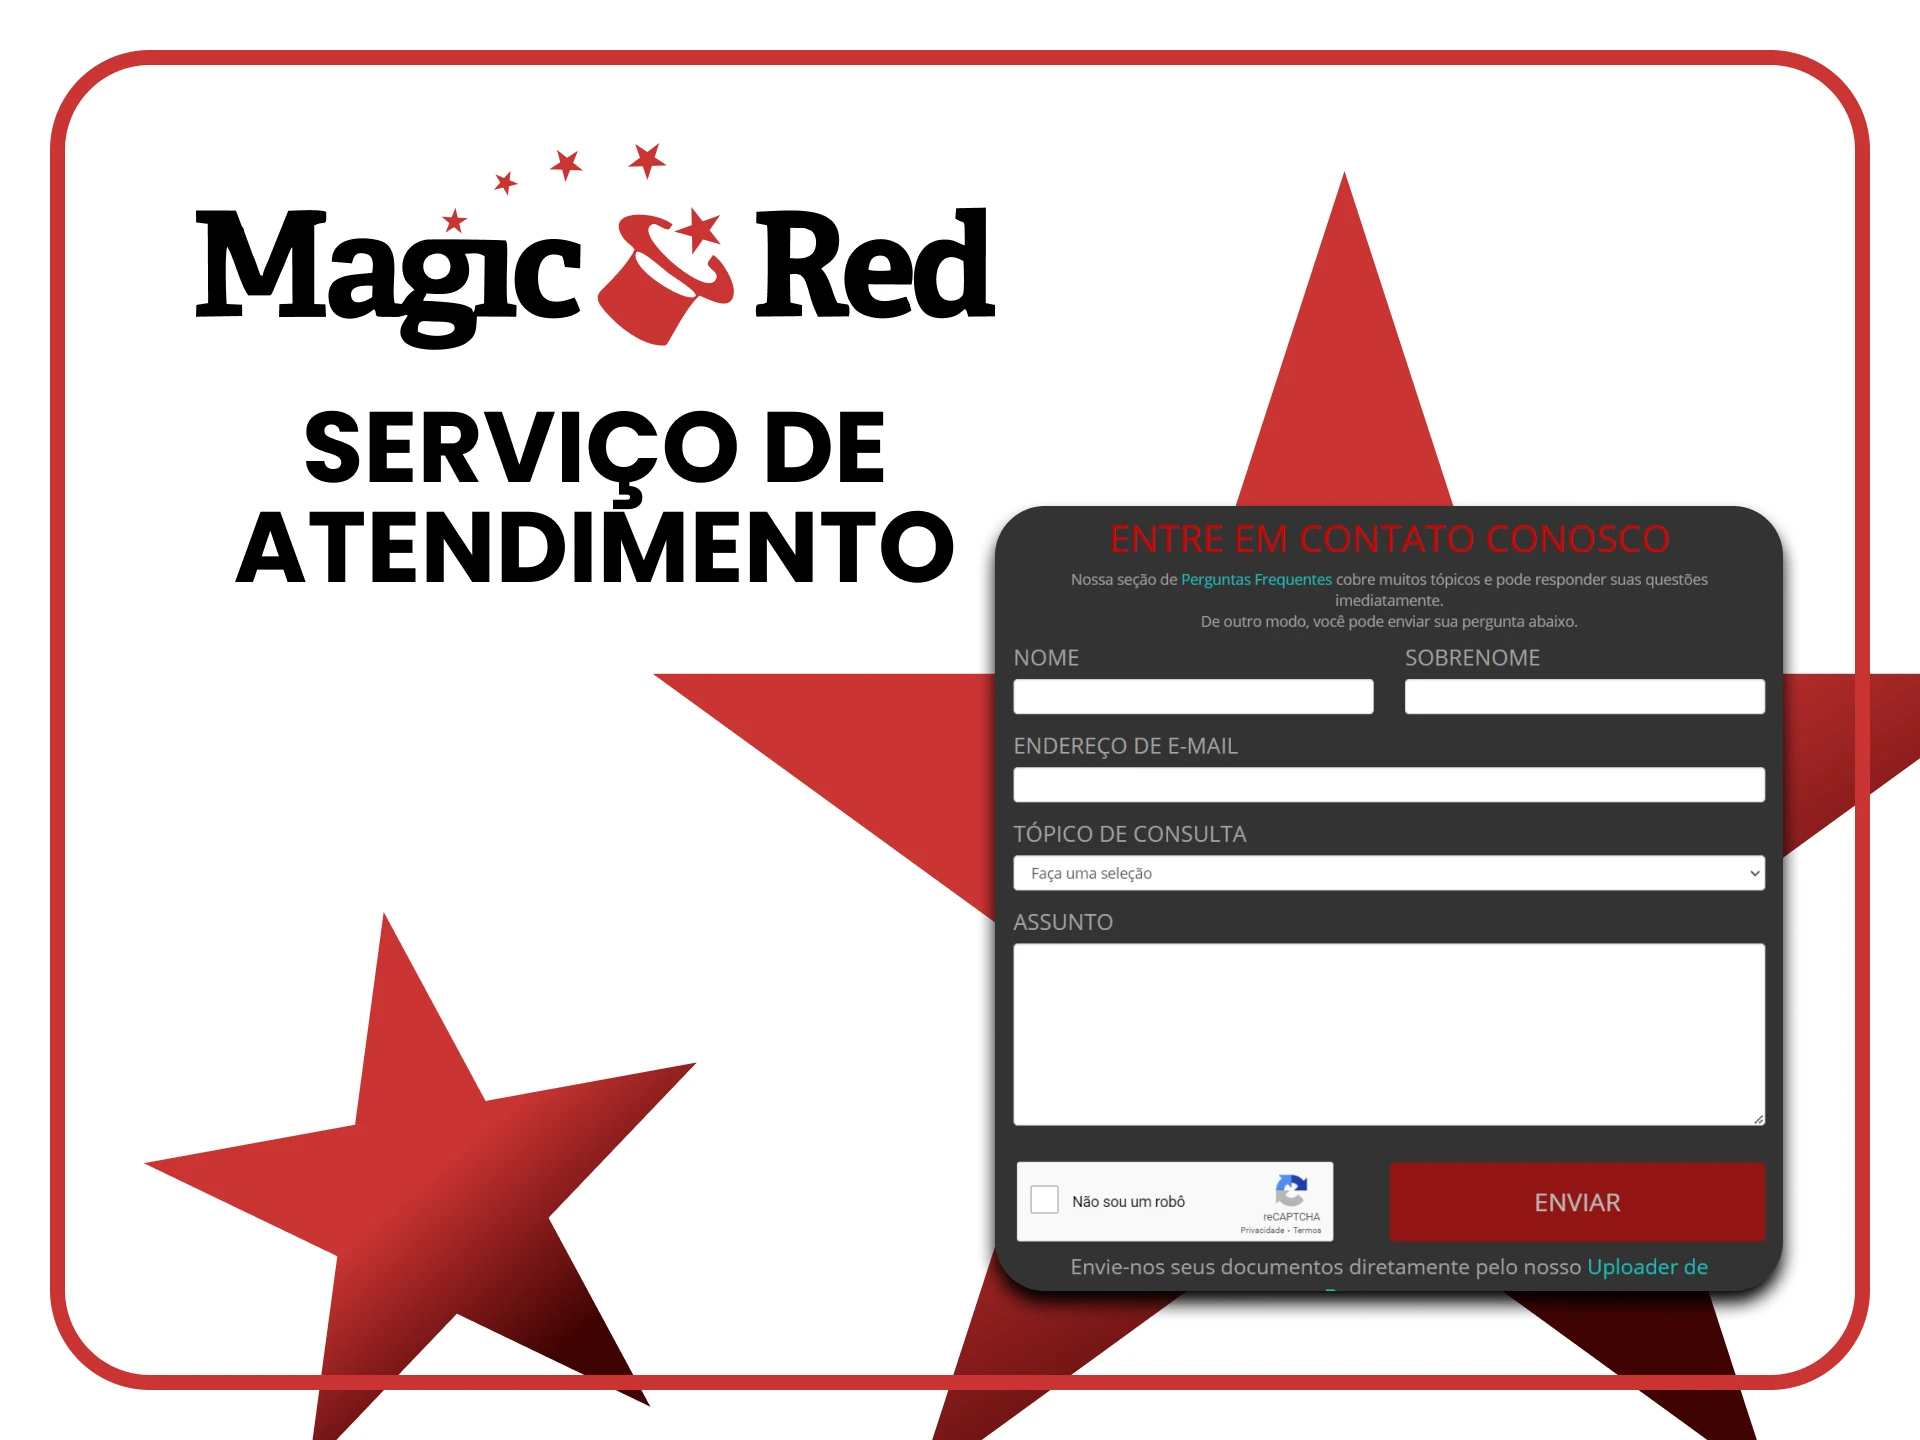 Entre em contato com a equipe do Magic Red em caso de dúvidas.